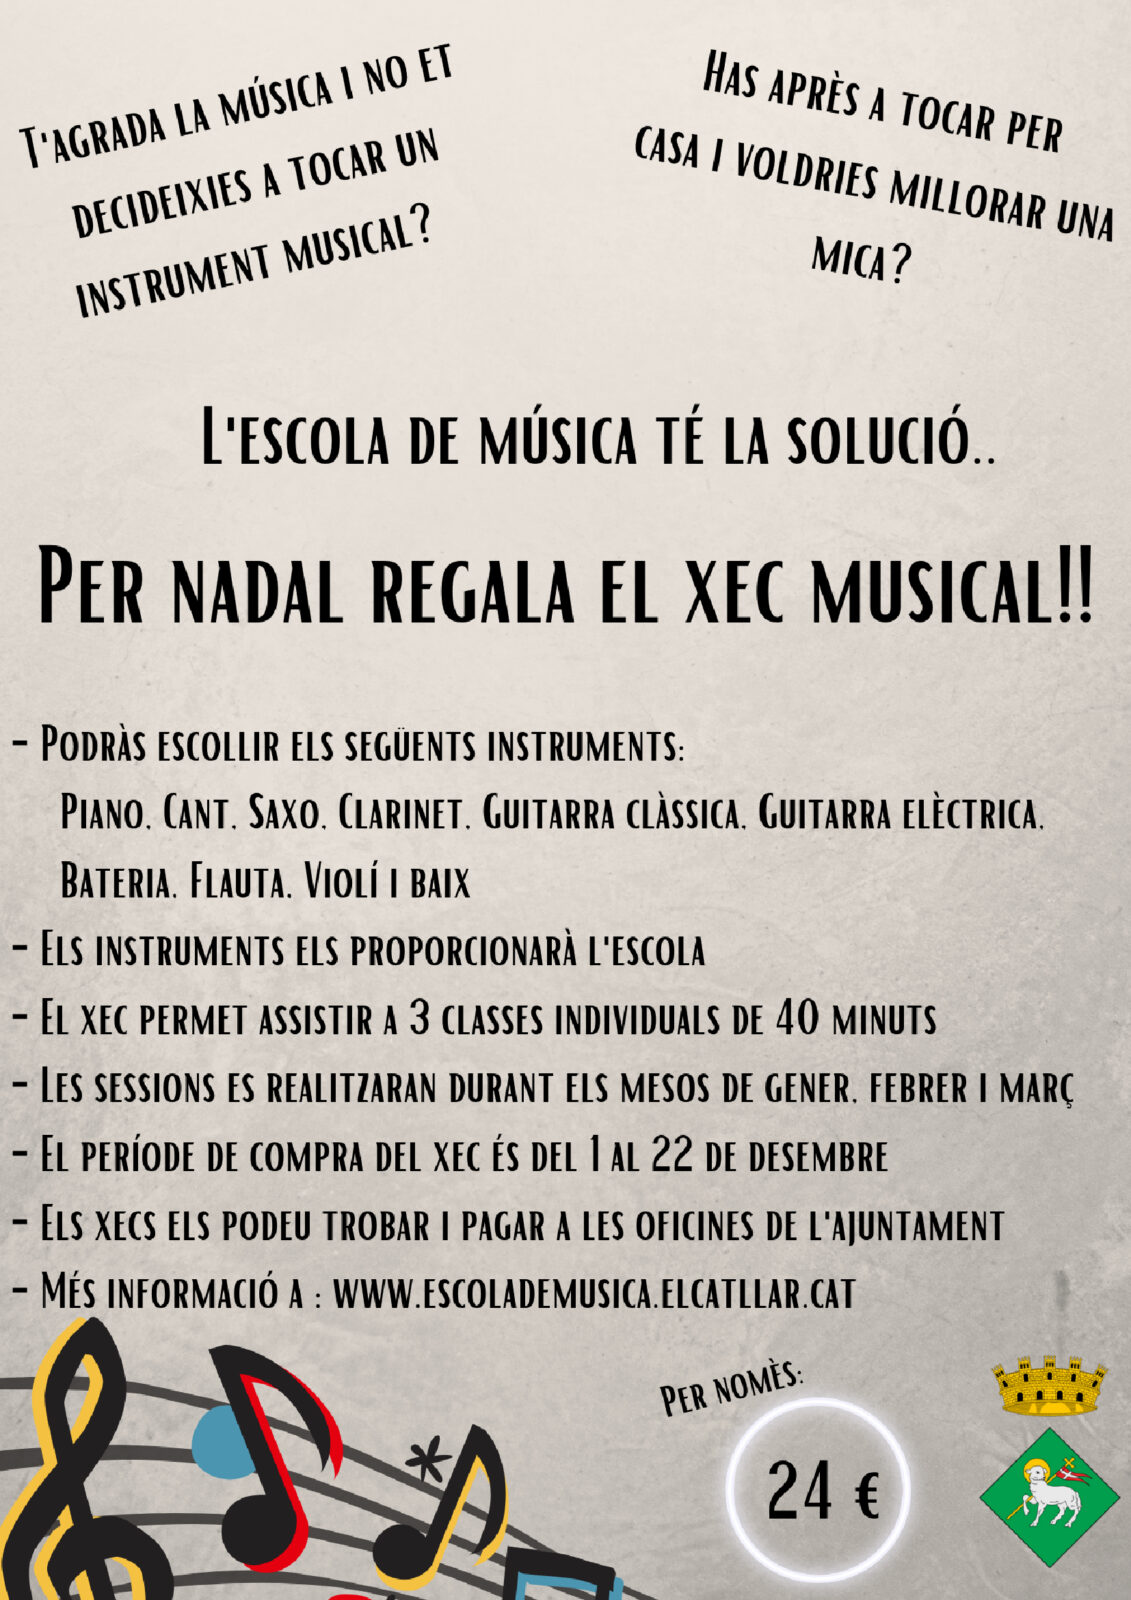 CHEQUE REGALO MUSICAL – ENSEÑANZAS MUSICALES DEL CATLLAR